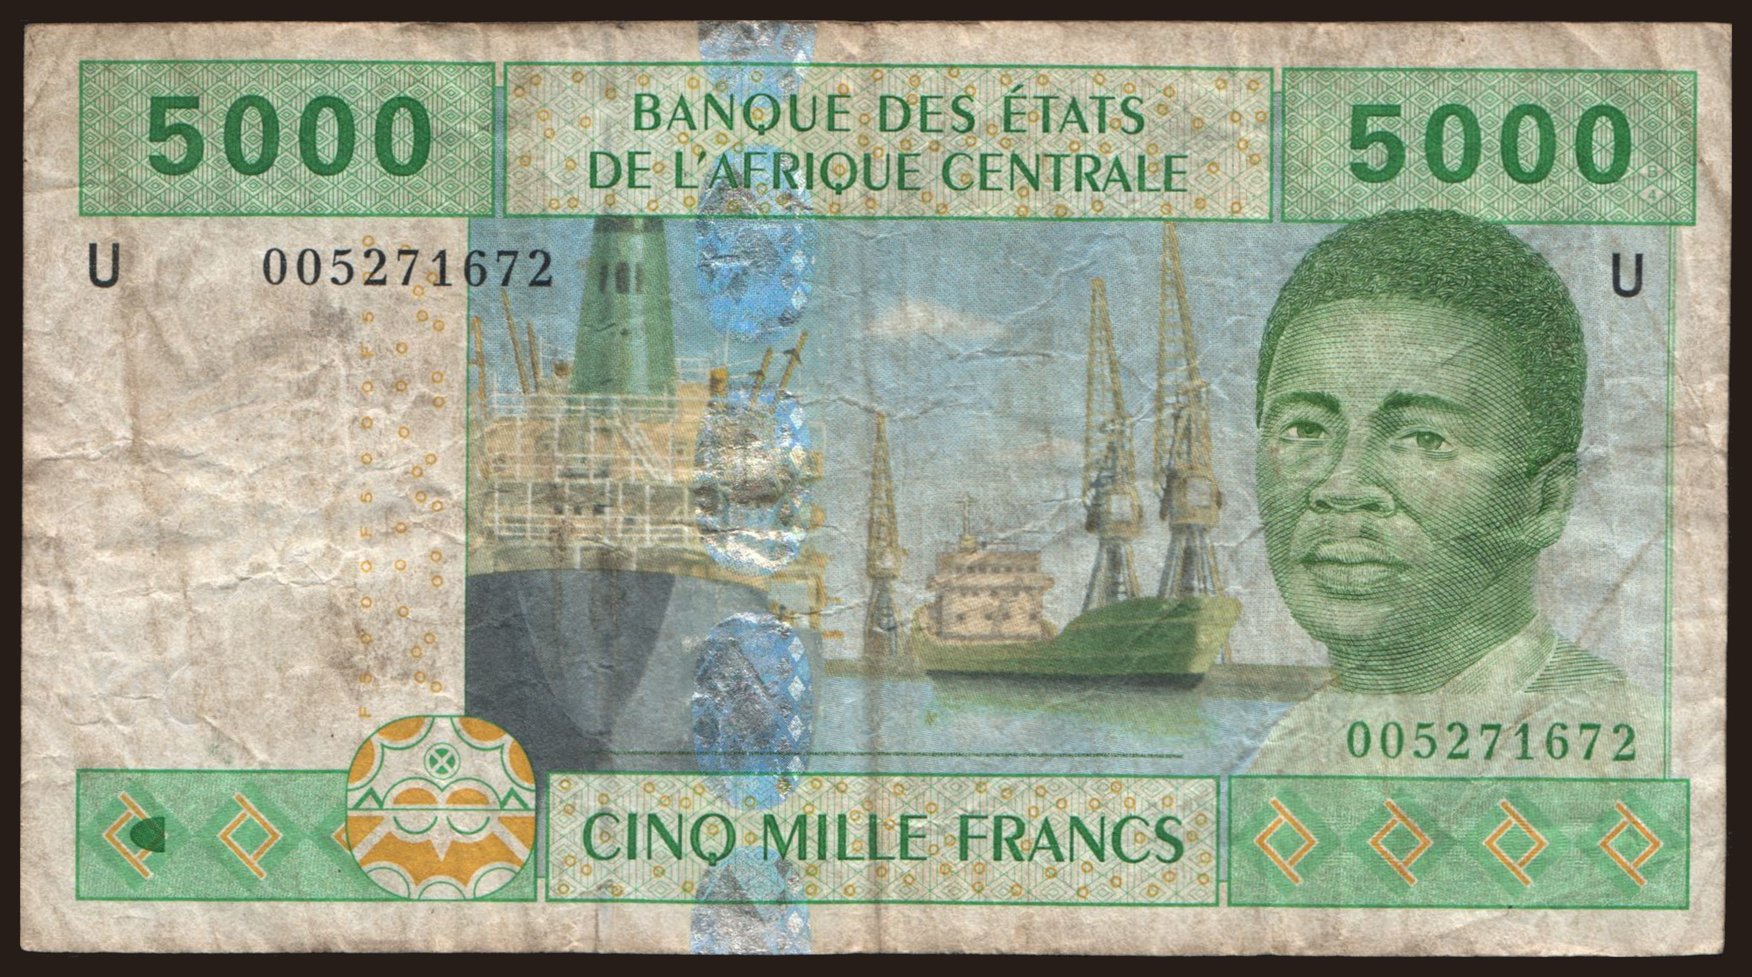 Cameroun, 5000 francs, 2002